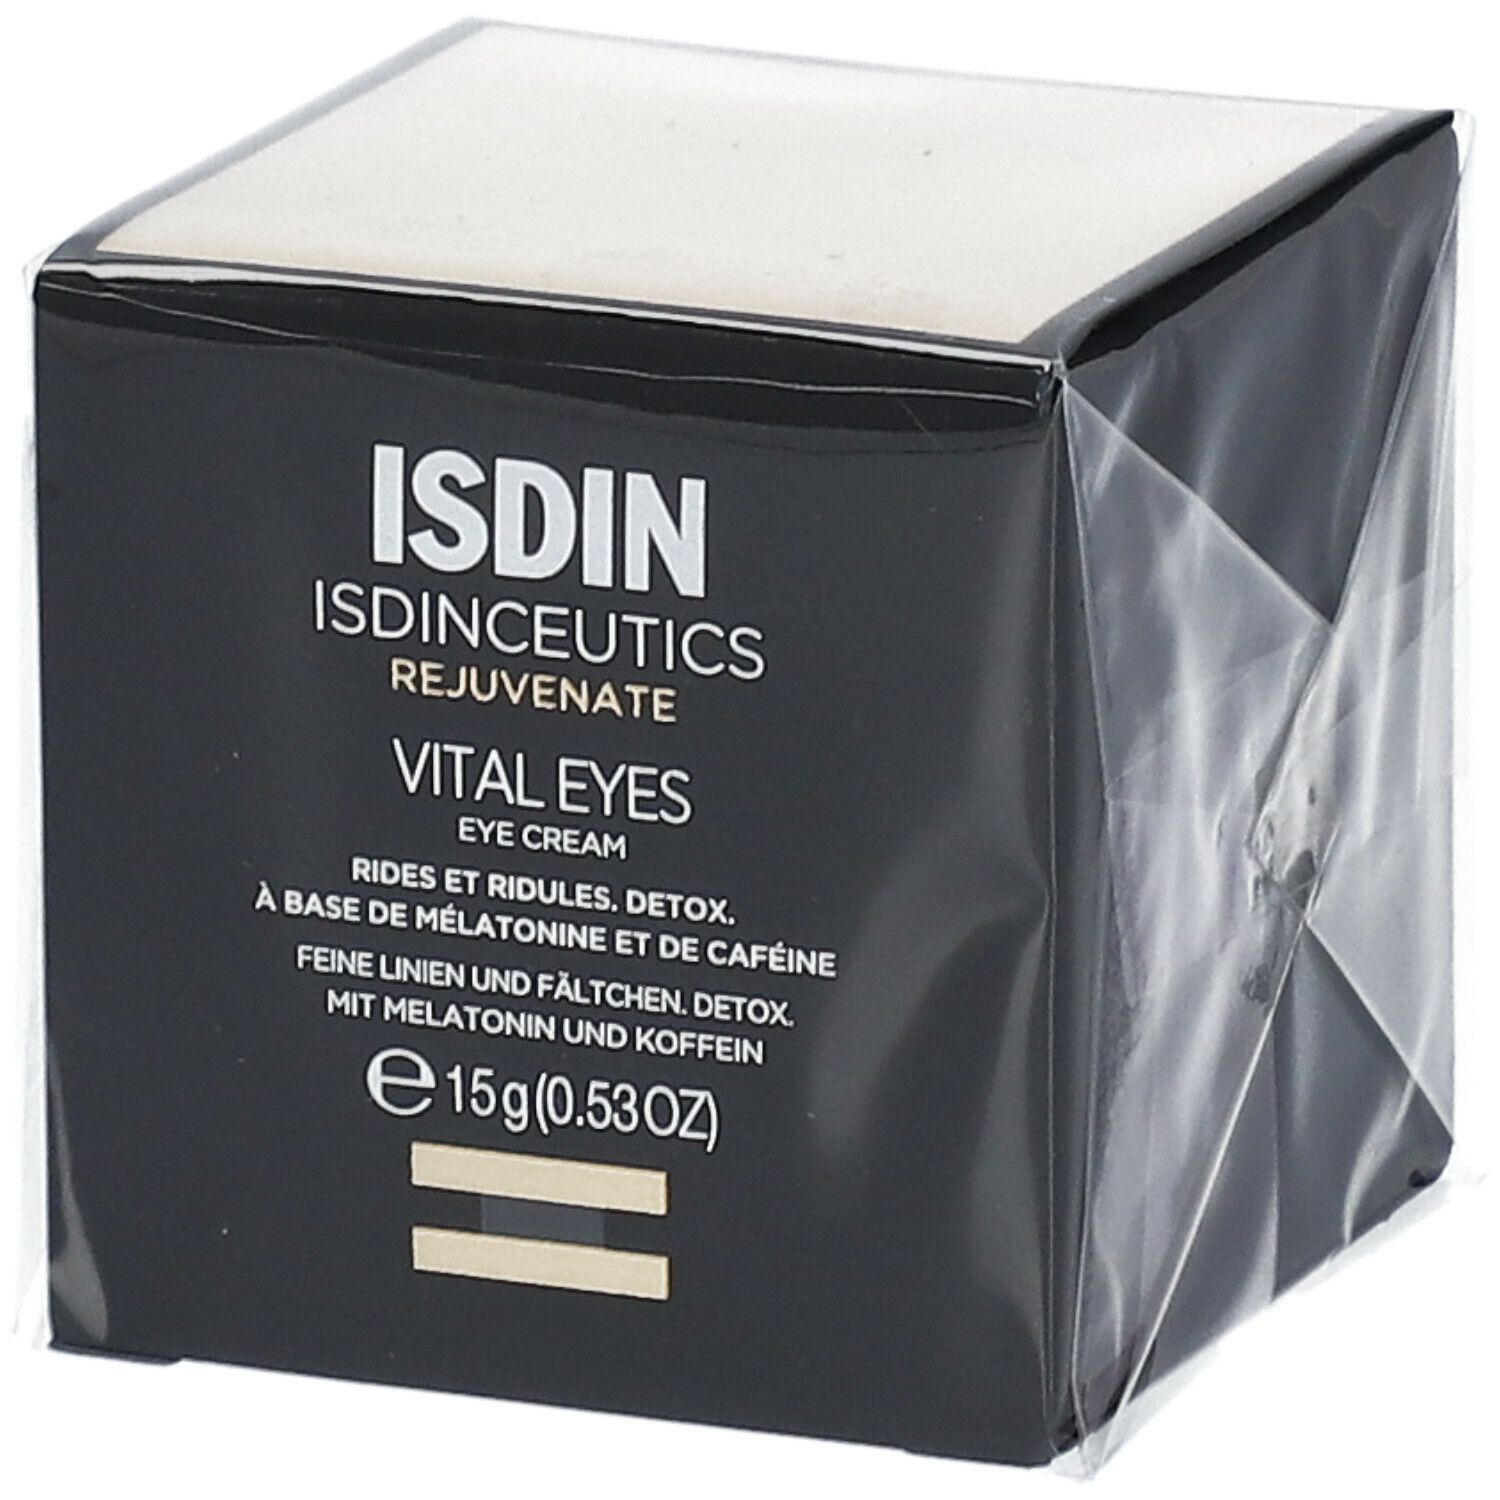 Image of ISDIN® Isdinceutics Vital Eyes